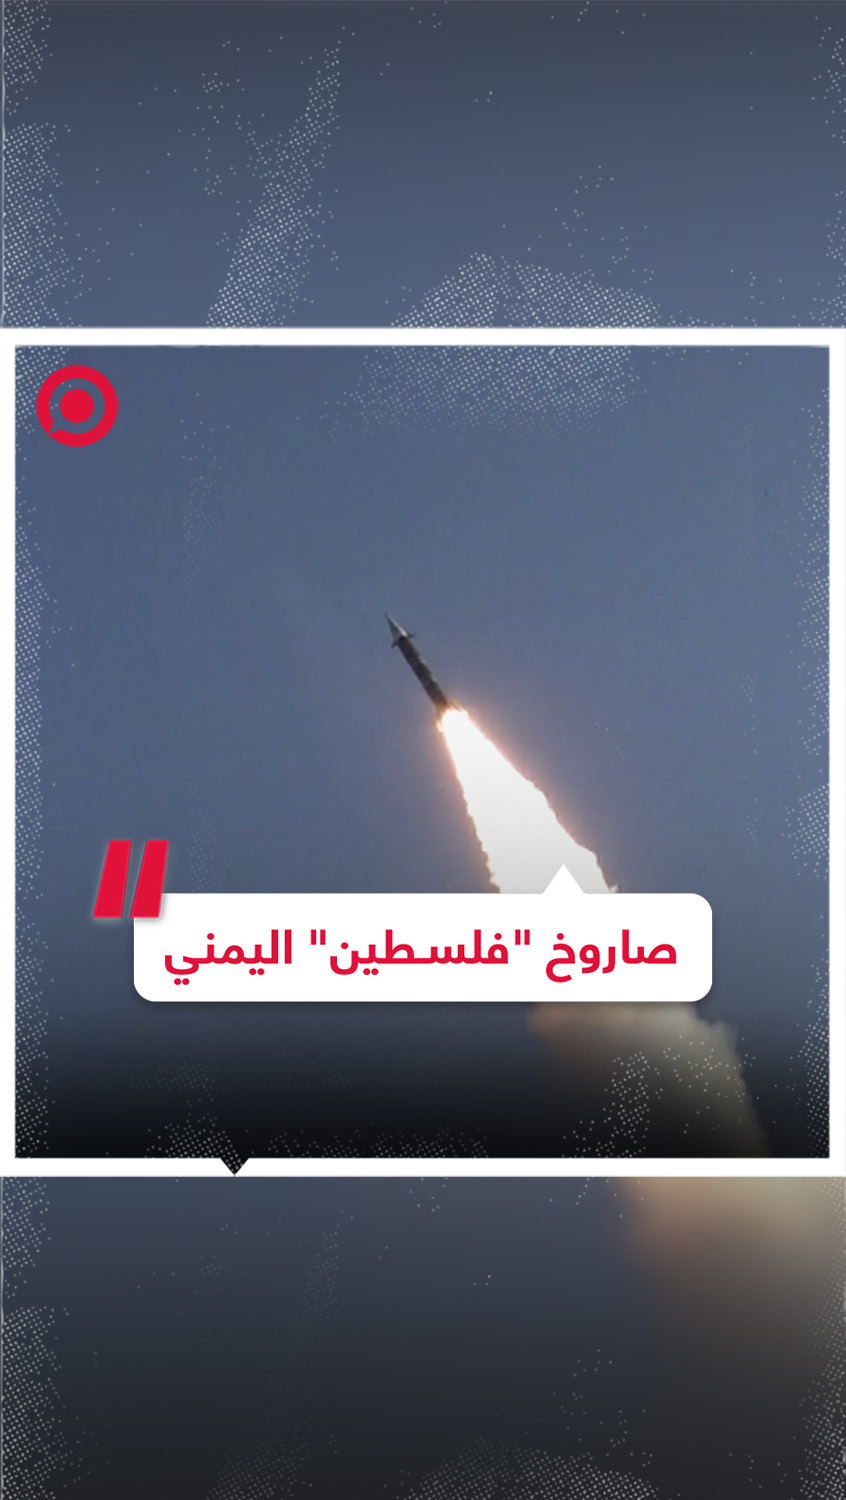 الحوثيون ينشرون مشاهد من أول استخدام لصاروخ "فلسطين" البالستي يمني الصنع